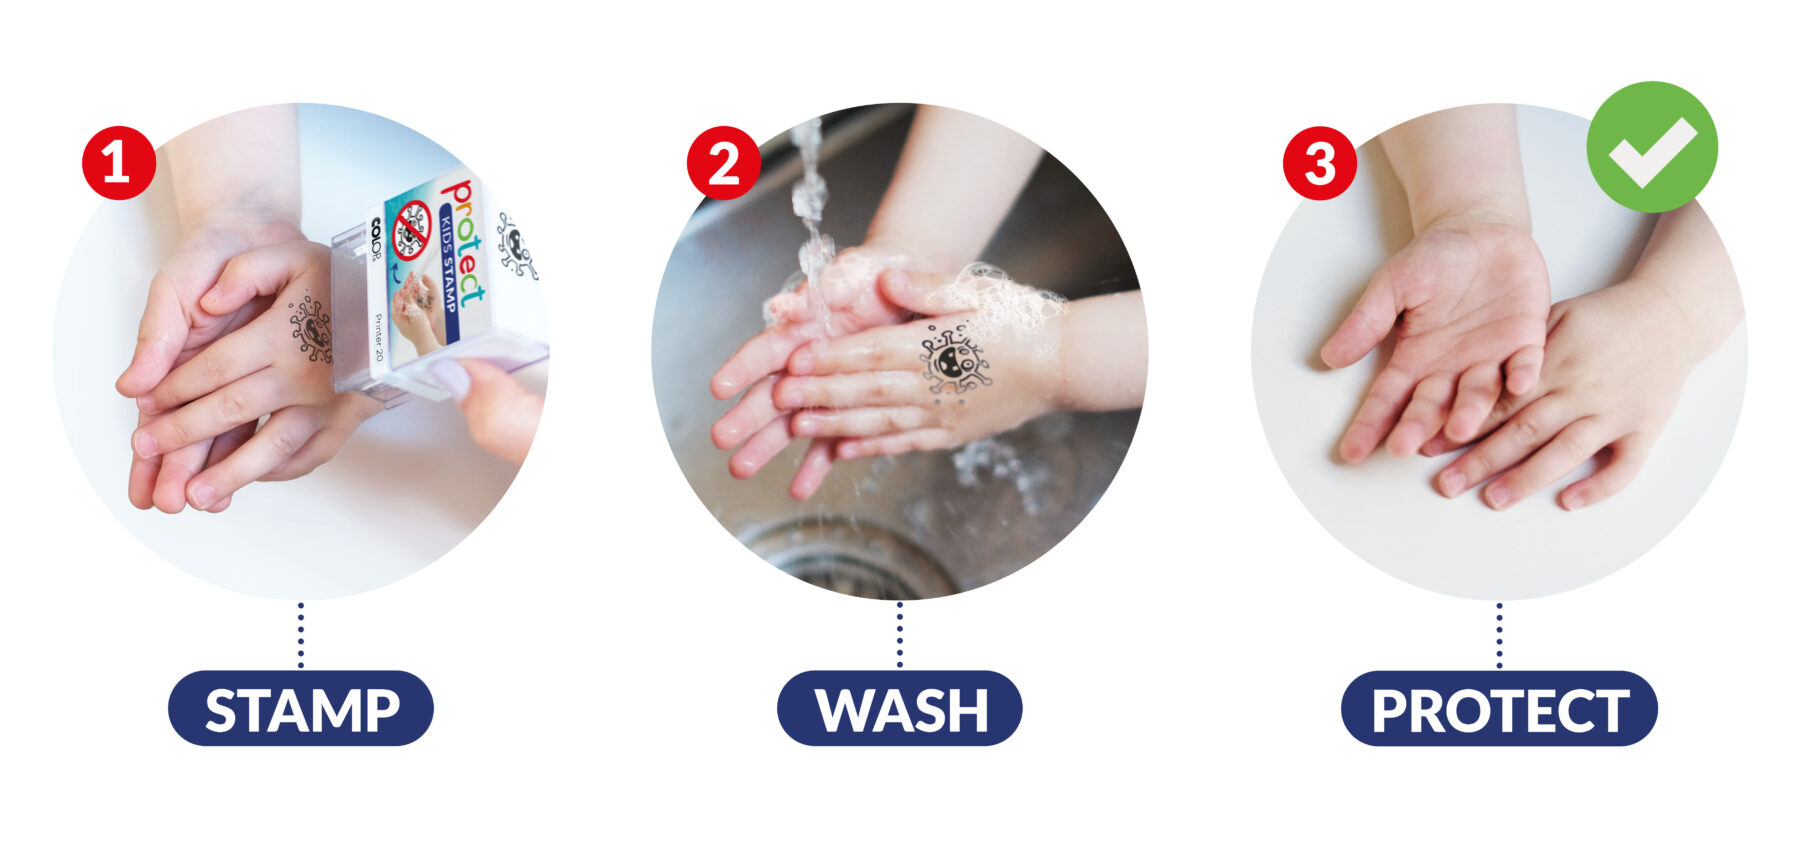 Les différentes étapes pour une bonne hygiène des mains protège tout le monde